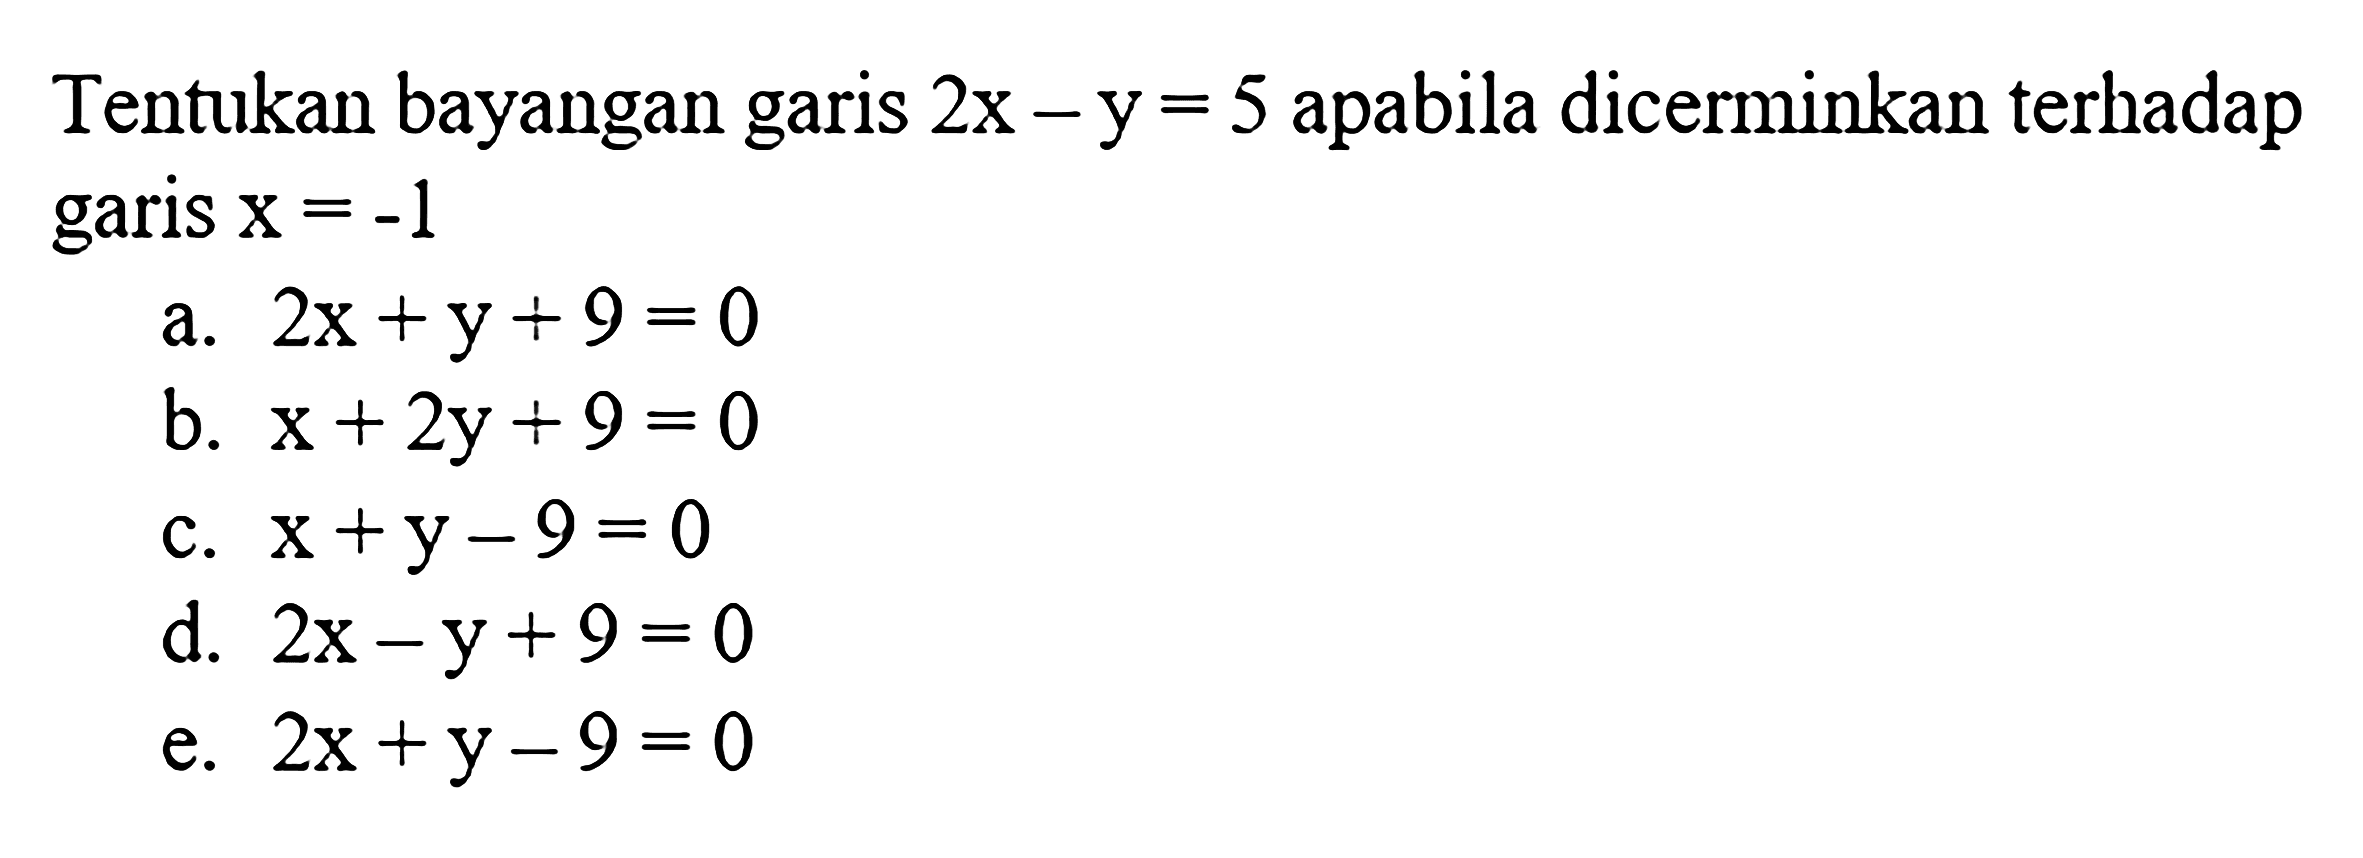 Tentukan bayangan garis 2x-y=5 apabila dicerminkan terhadap garis x=-1 